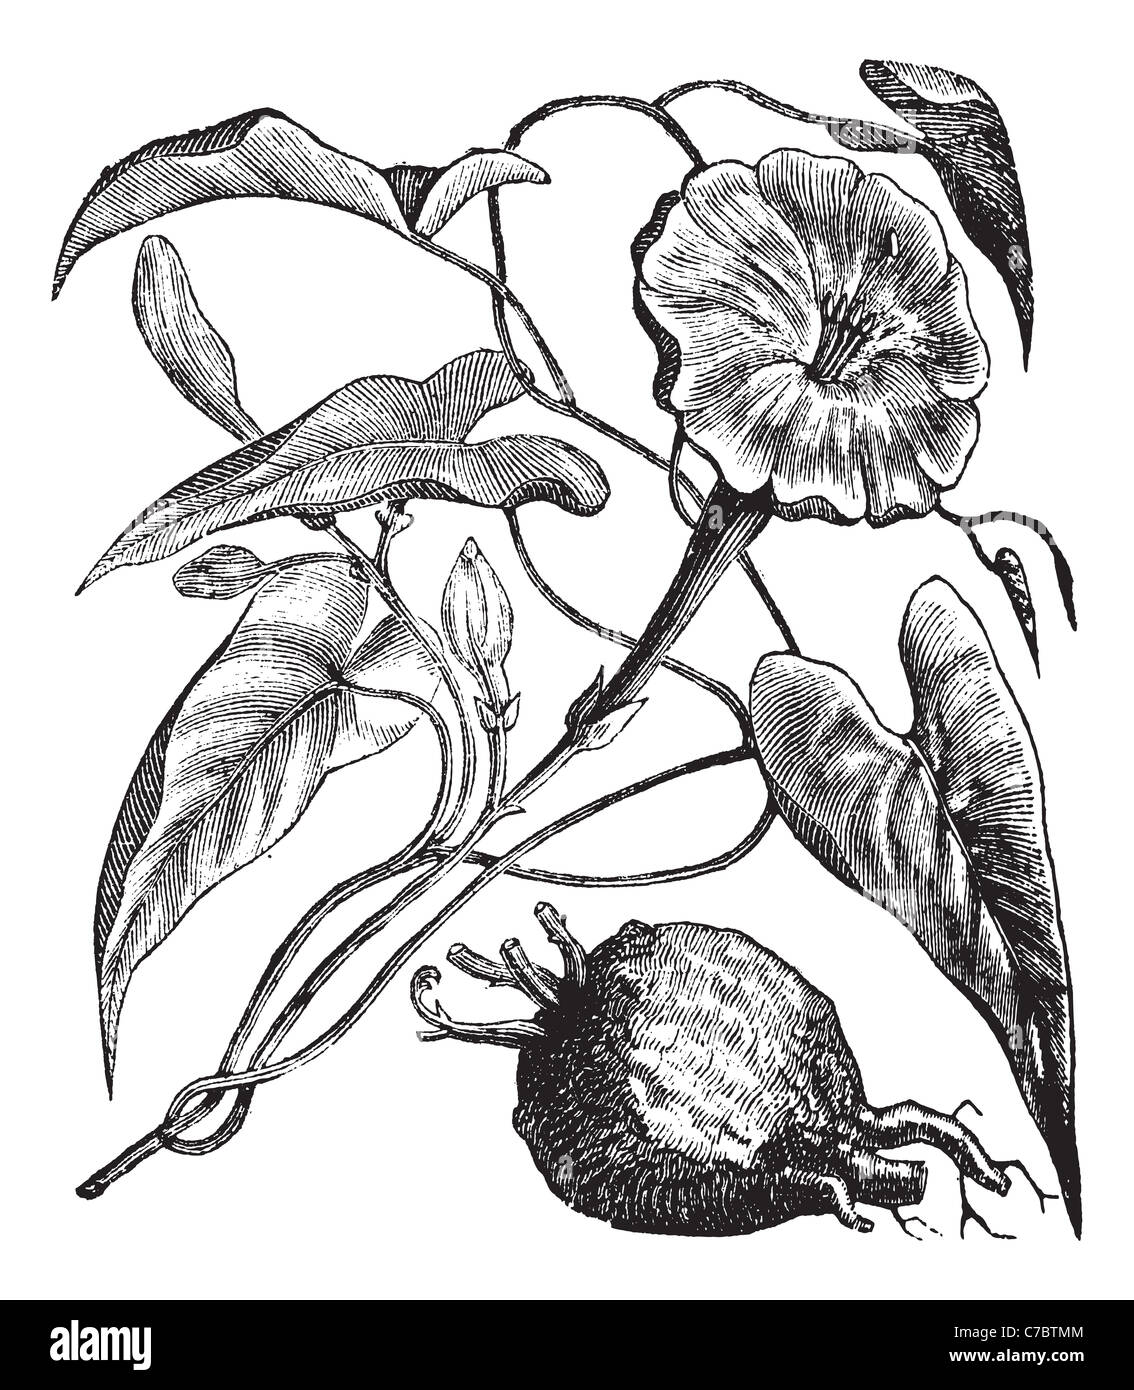 Exogonium purga ou Jalapa, gravure d'époque. Vieille illustration gravée de Exogonium purga isolé sur un fond blanc. Banque D'Images